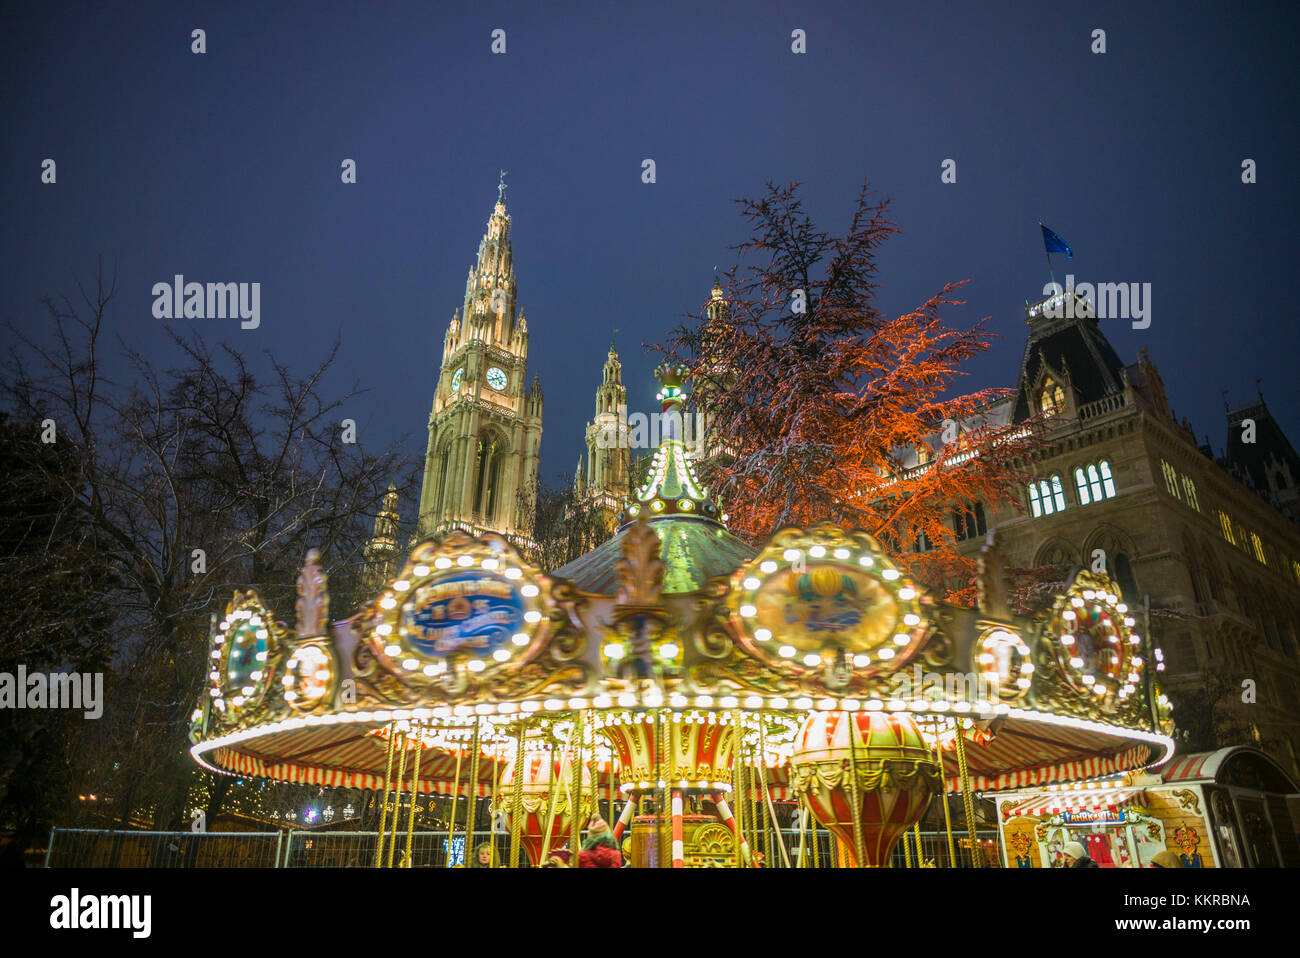 Austria, Viena, Rathaus, el ayuntamiento, la Navidad Foto de stock